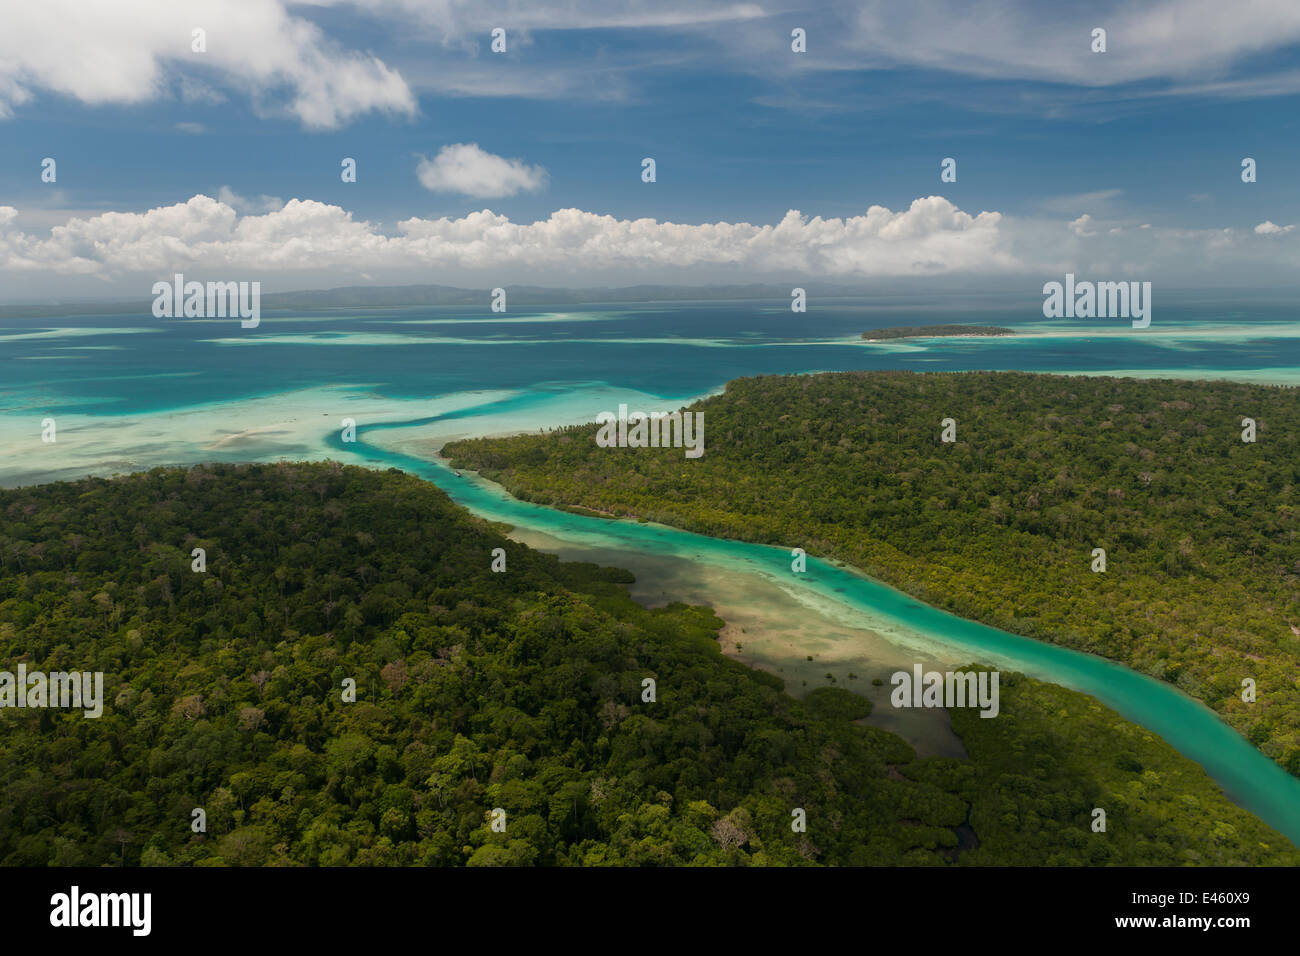 Luftbild von Korallenbänken und weißem Sand bars umgebenden Bugsuk Insel, Bauernhof Farm 1 der Jewelmer Perle. Diese Privatinsel ist seit den 1970er Jahren stark geschützt und ist in makellosem Zustand Umwelt, Palawan, Philippinen, April 2010, kultivierten G Stockfoto